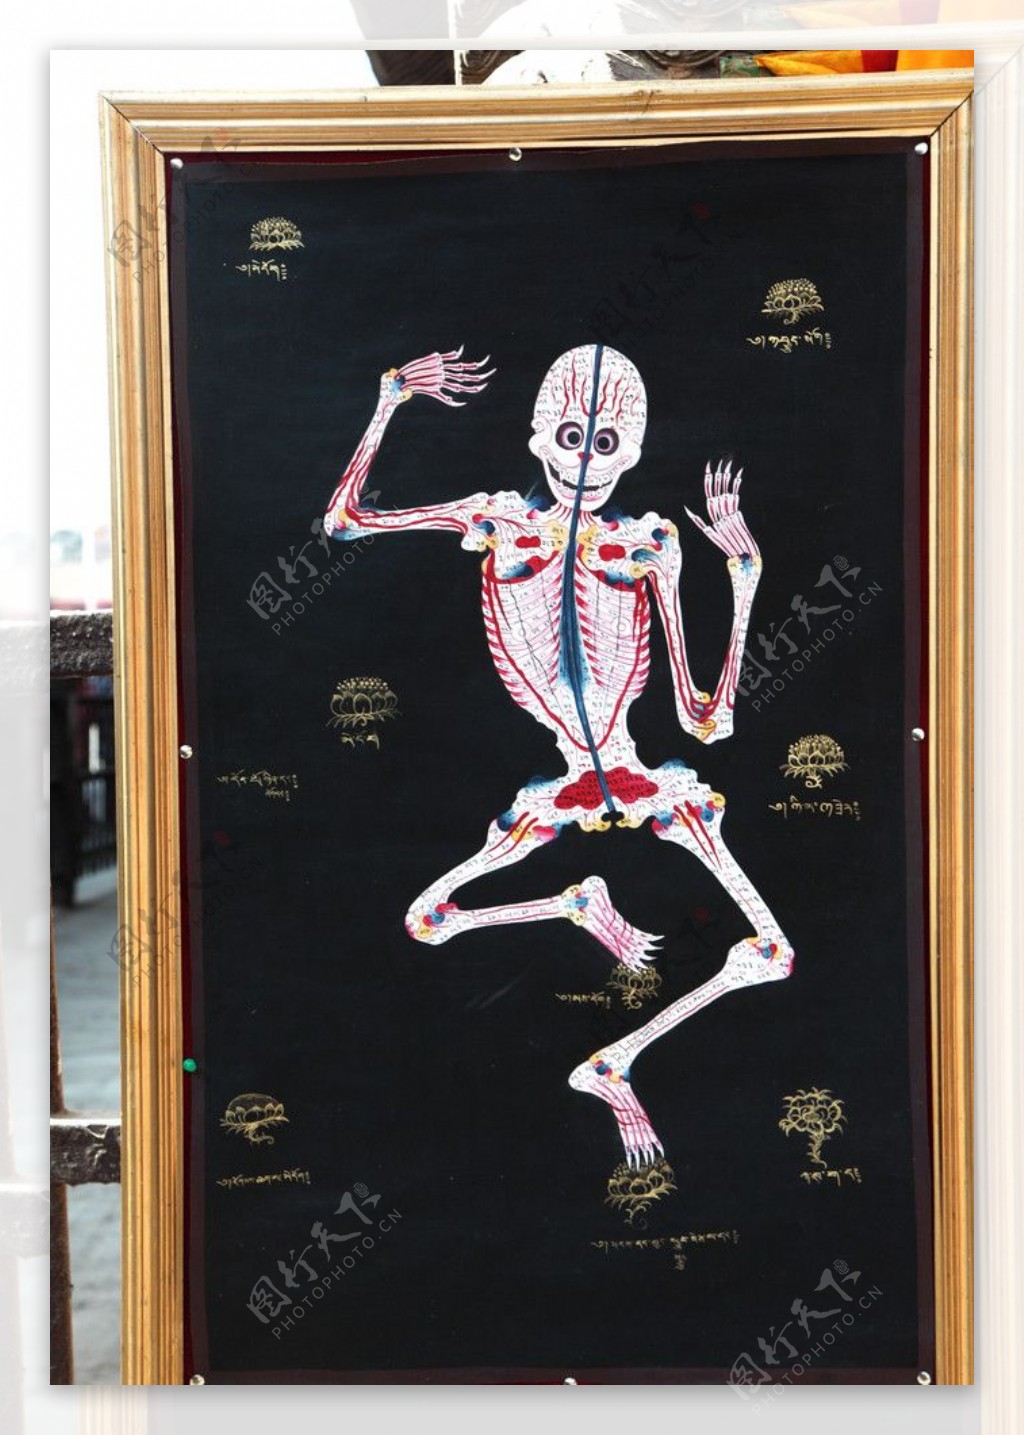 尼泊尔人体骨架骷髅画